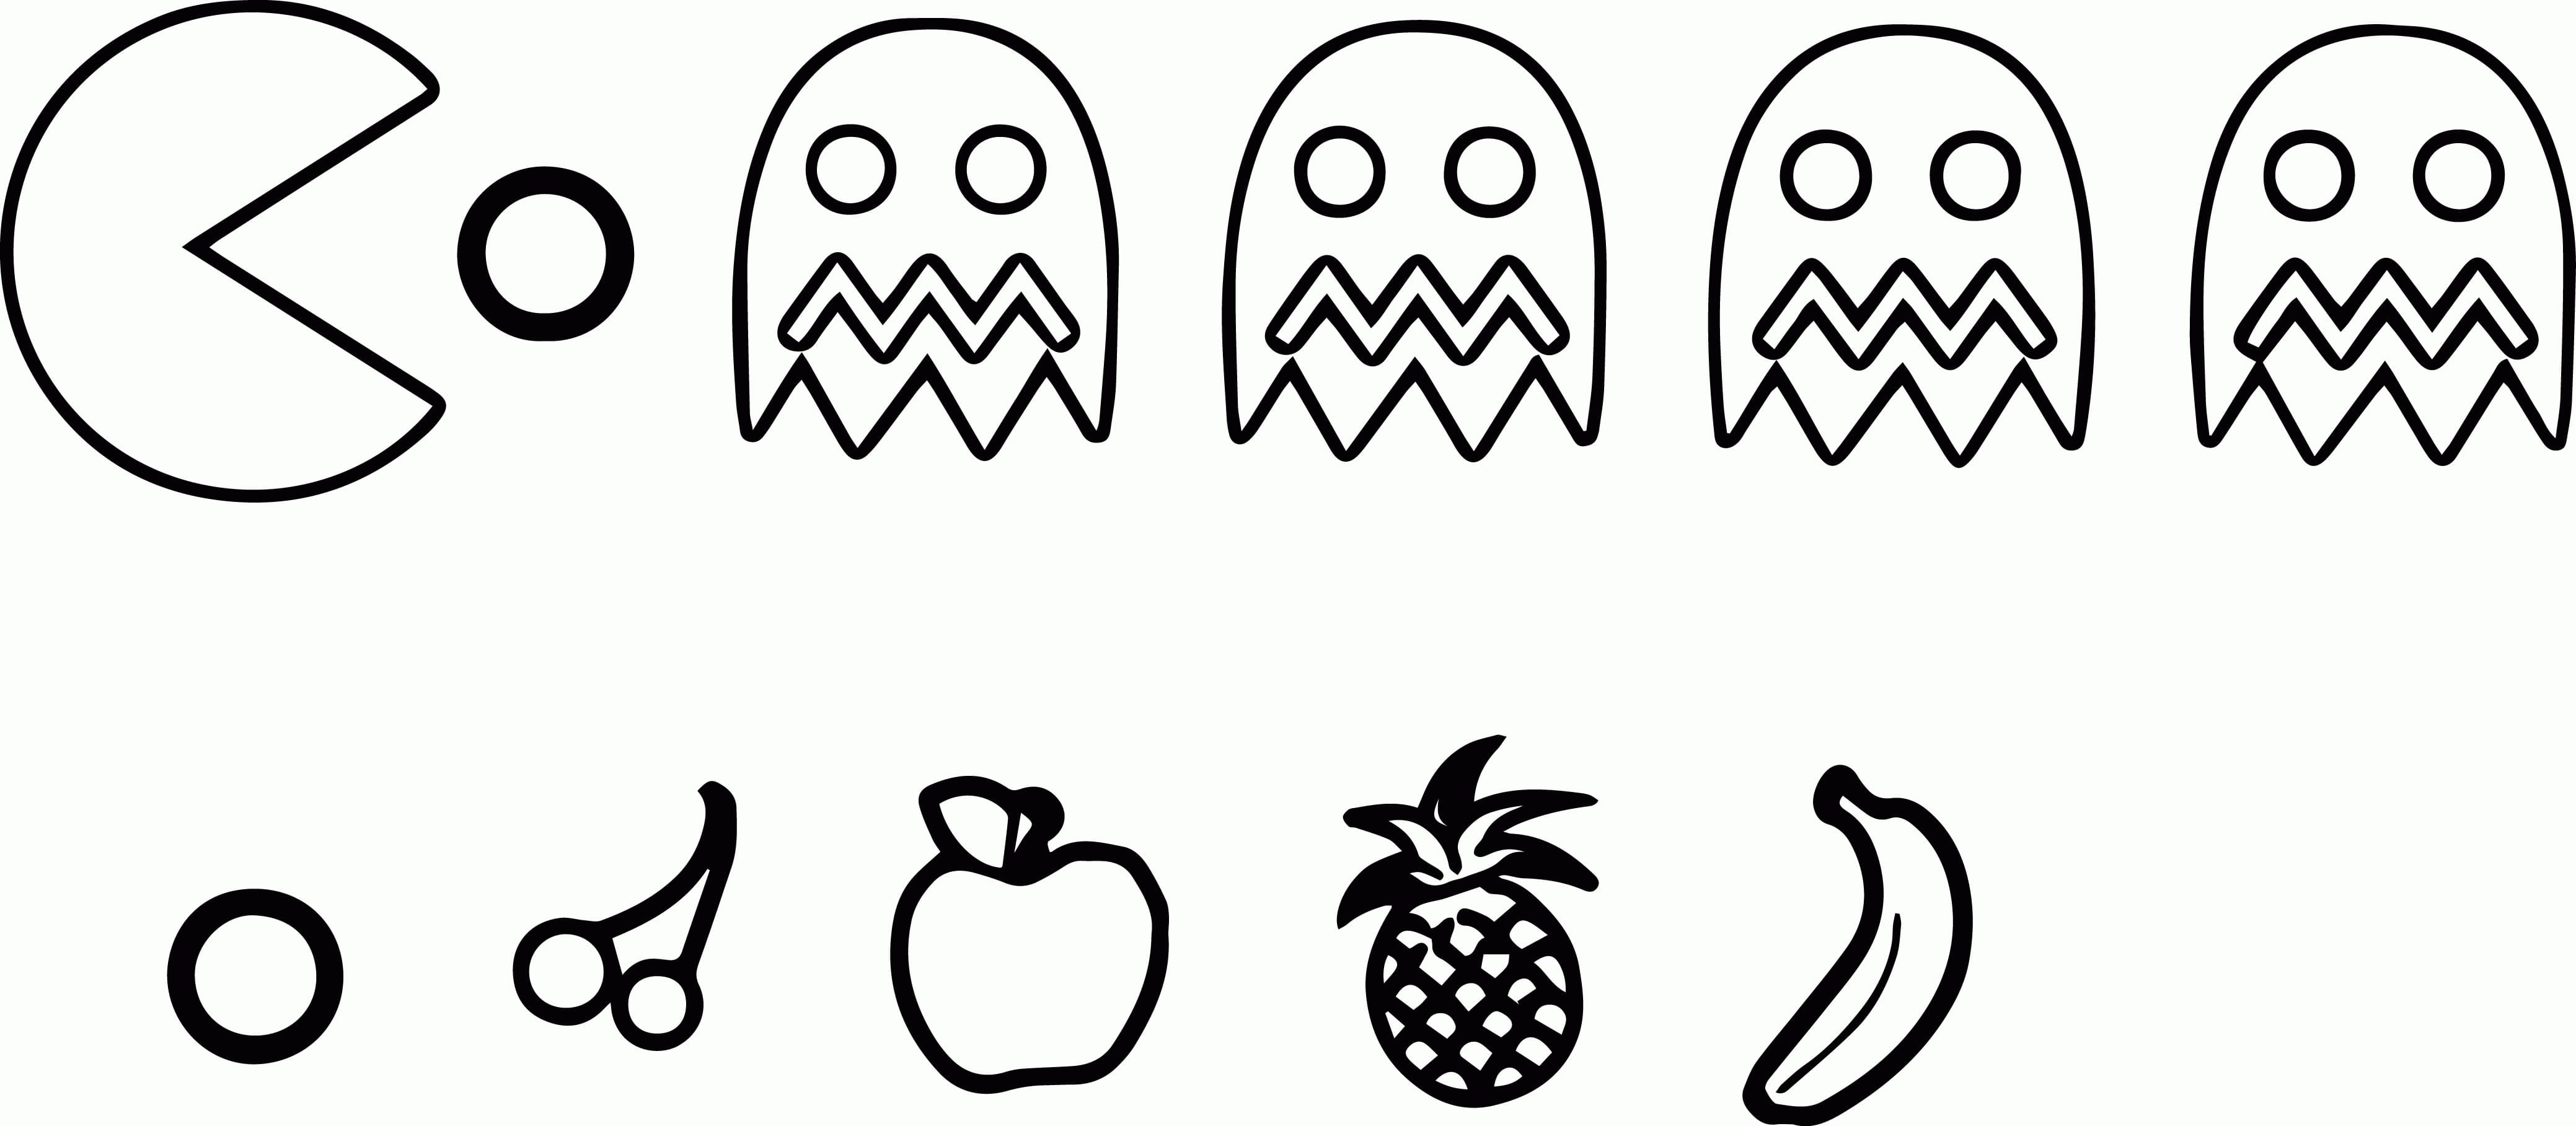 Desenhos de Pacman para Colorir, Pintar e Imprimir 